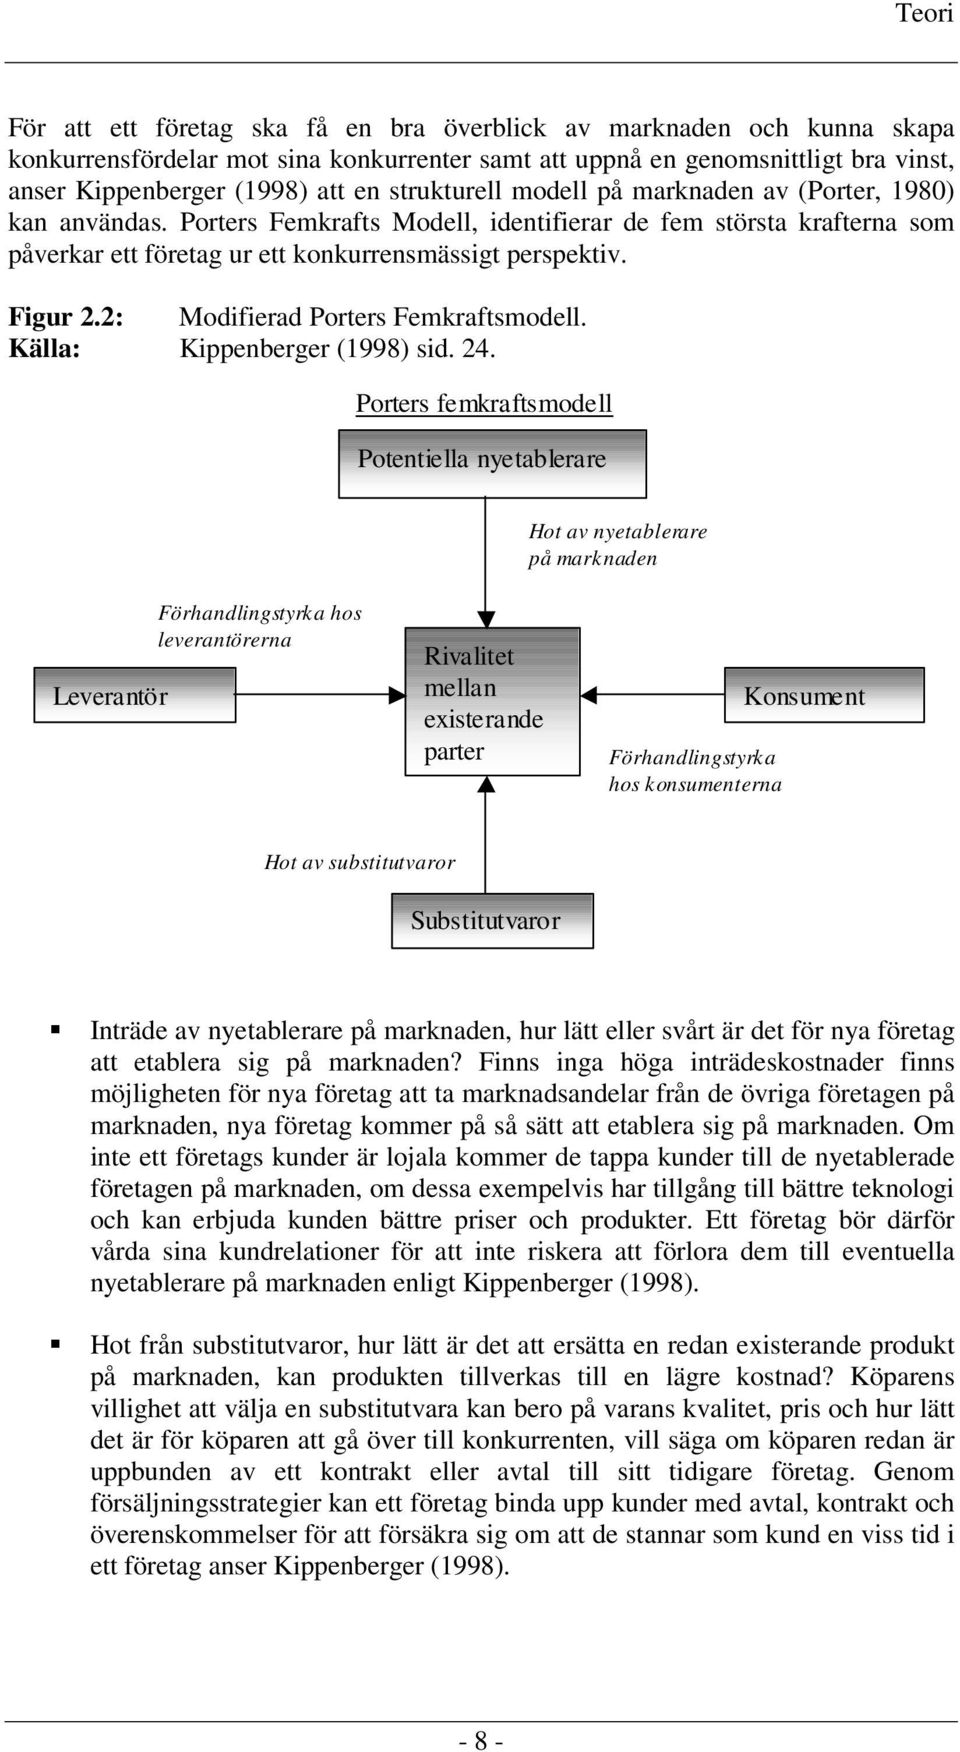 2: Modifierad Porters Femkraftsmodell. Källa: Kippenberger (1998) sid. 24.